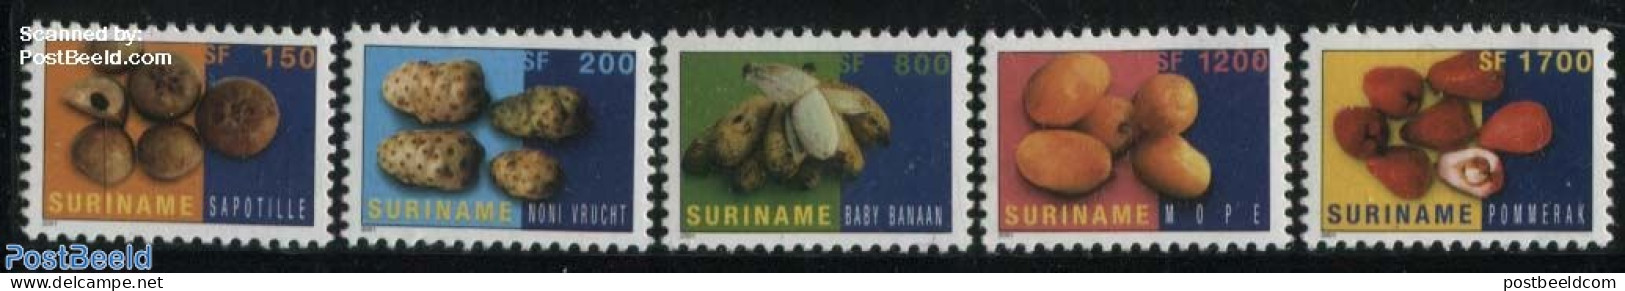 Suriname, Republic 2001 Fruits 5v, Mint NH, Nature - Fruit - Obst & Früchte